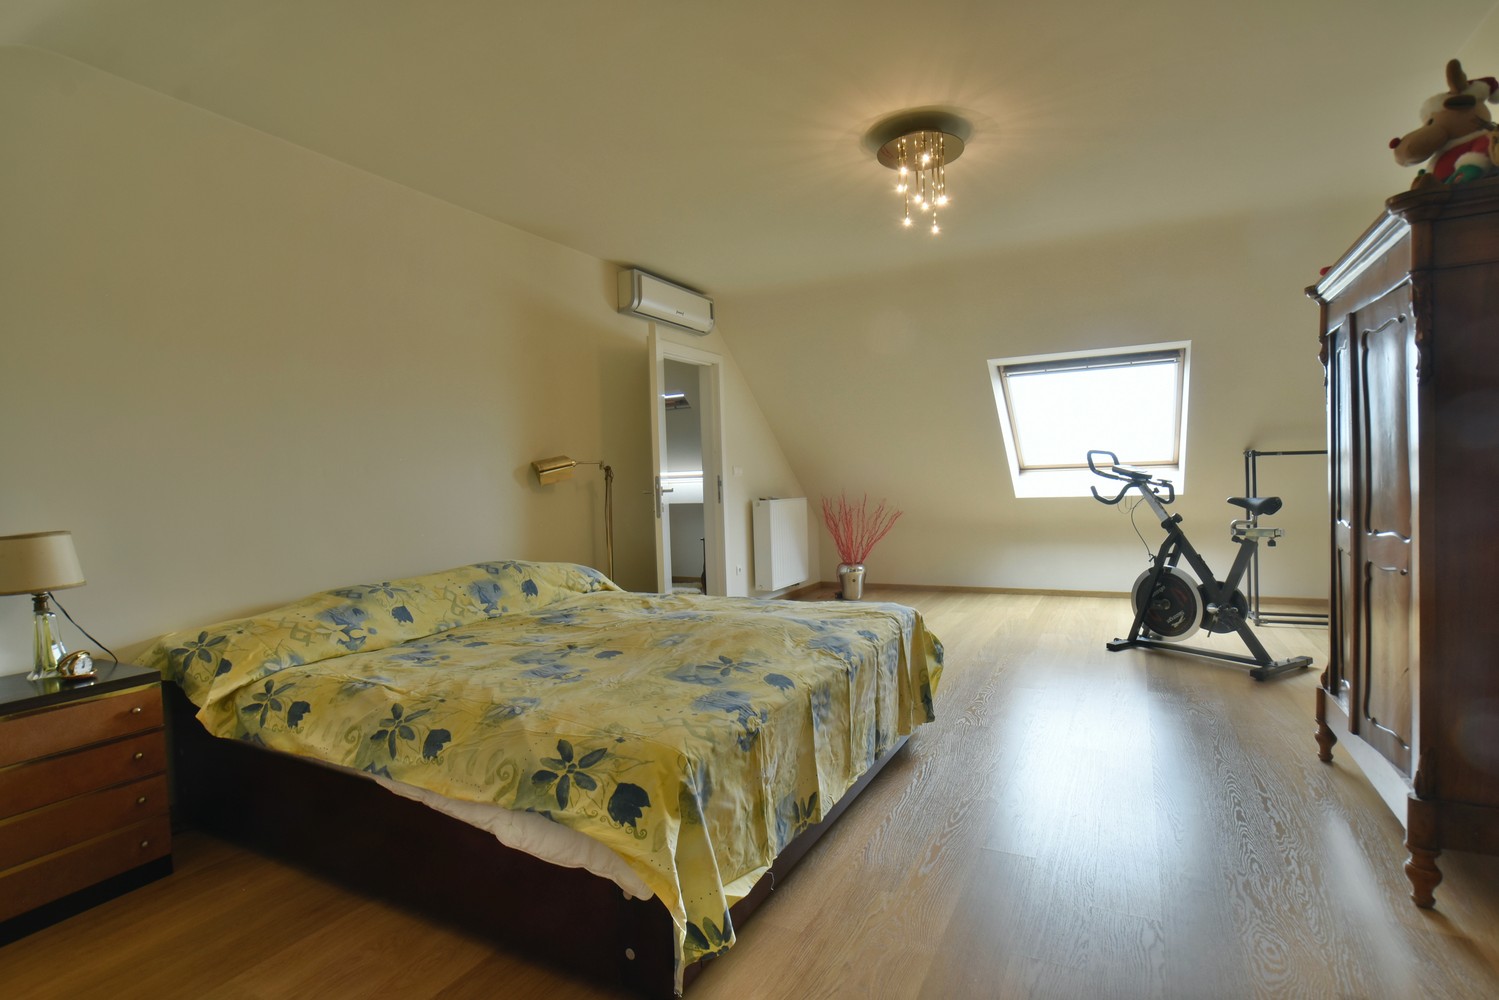 Klassevol penthouse van 318 m² met 4 slaapkamers, 2 badkamers en 2 garages, rustig gelegen in het centrum van Lanaken foto 18